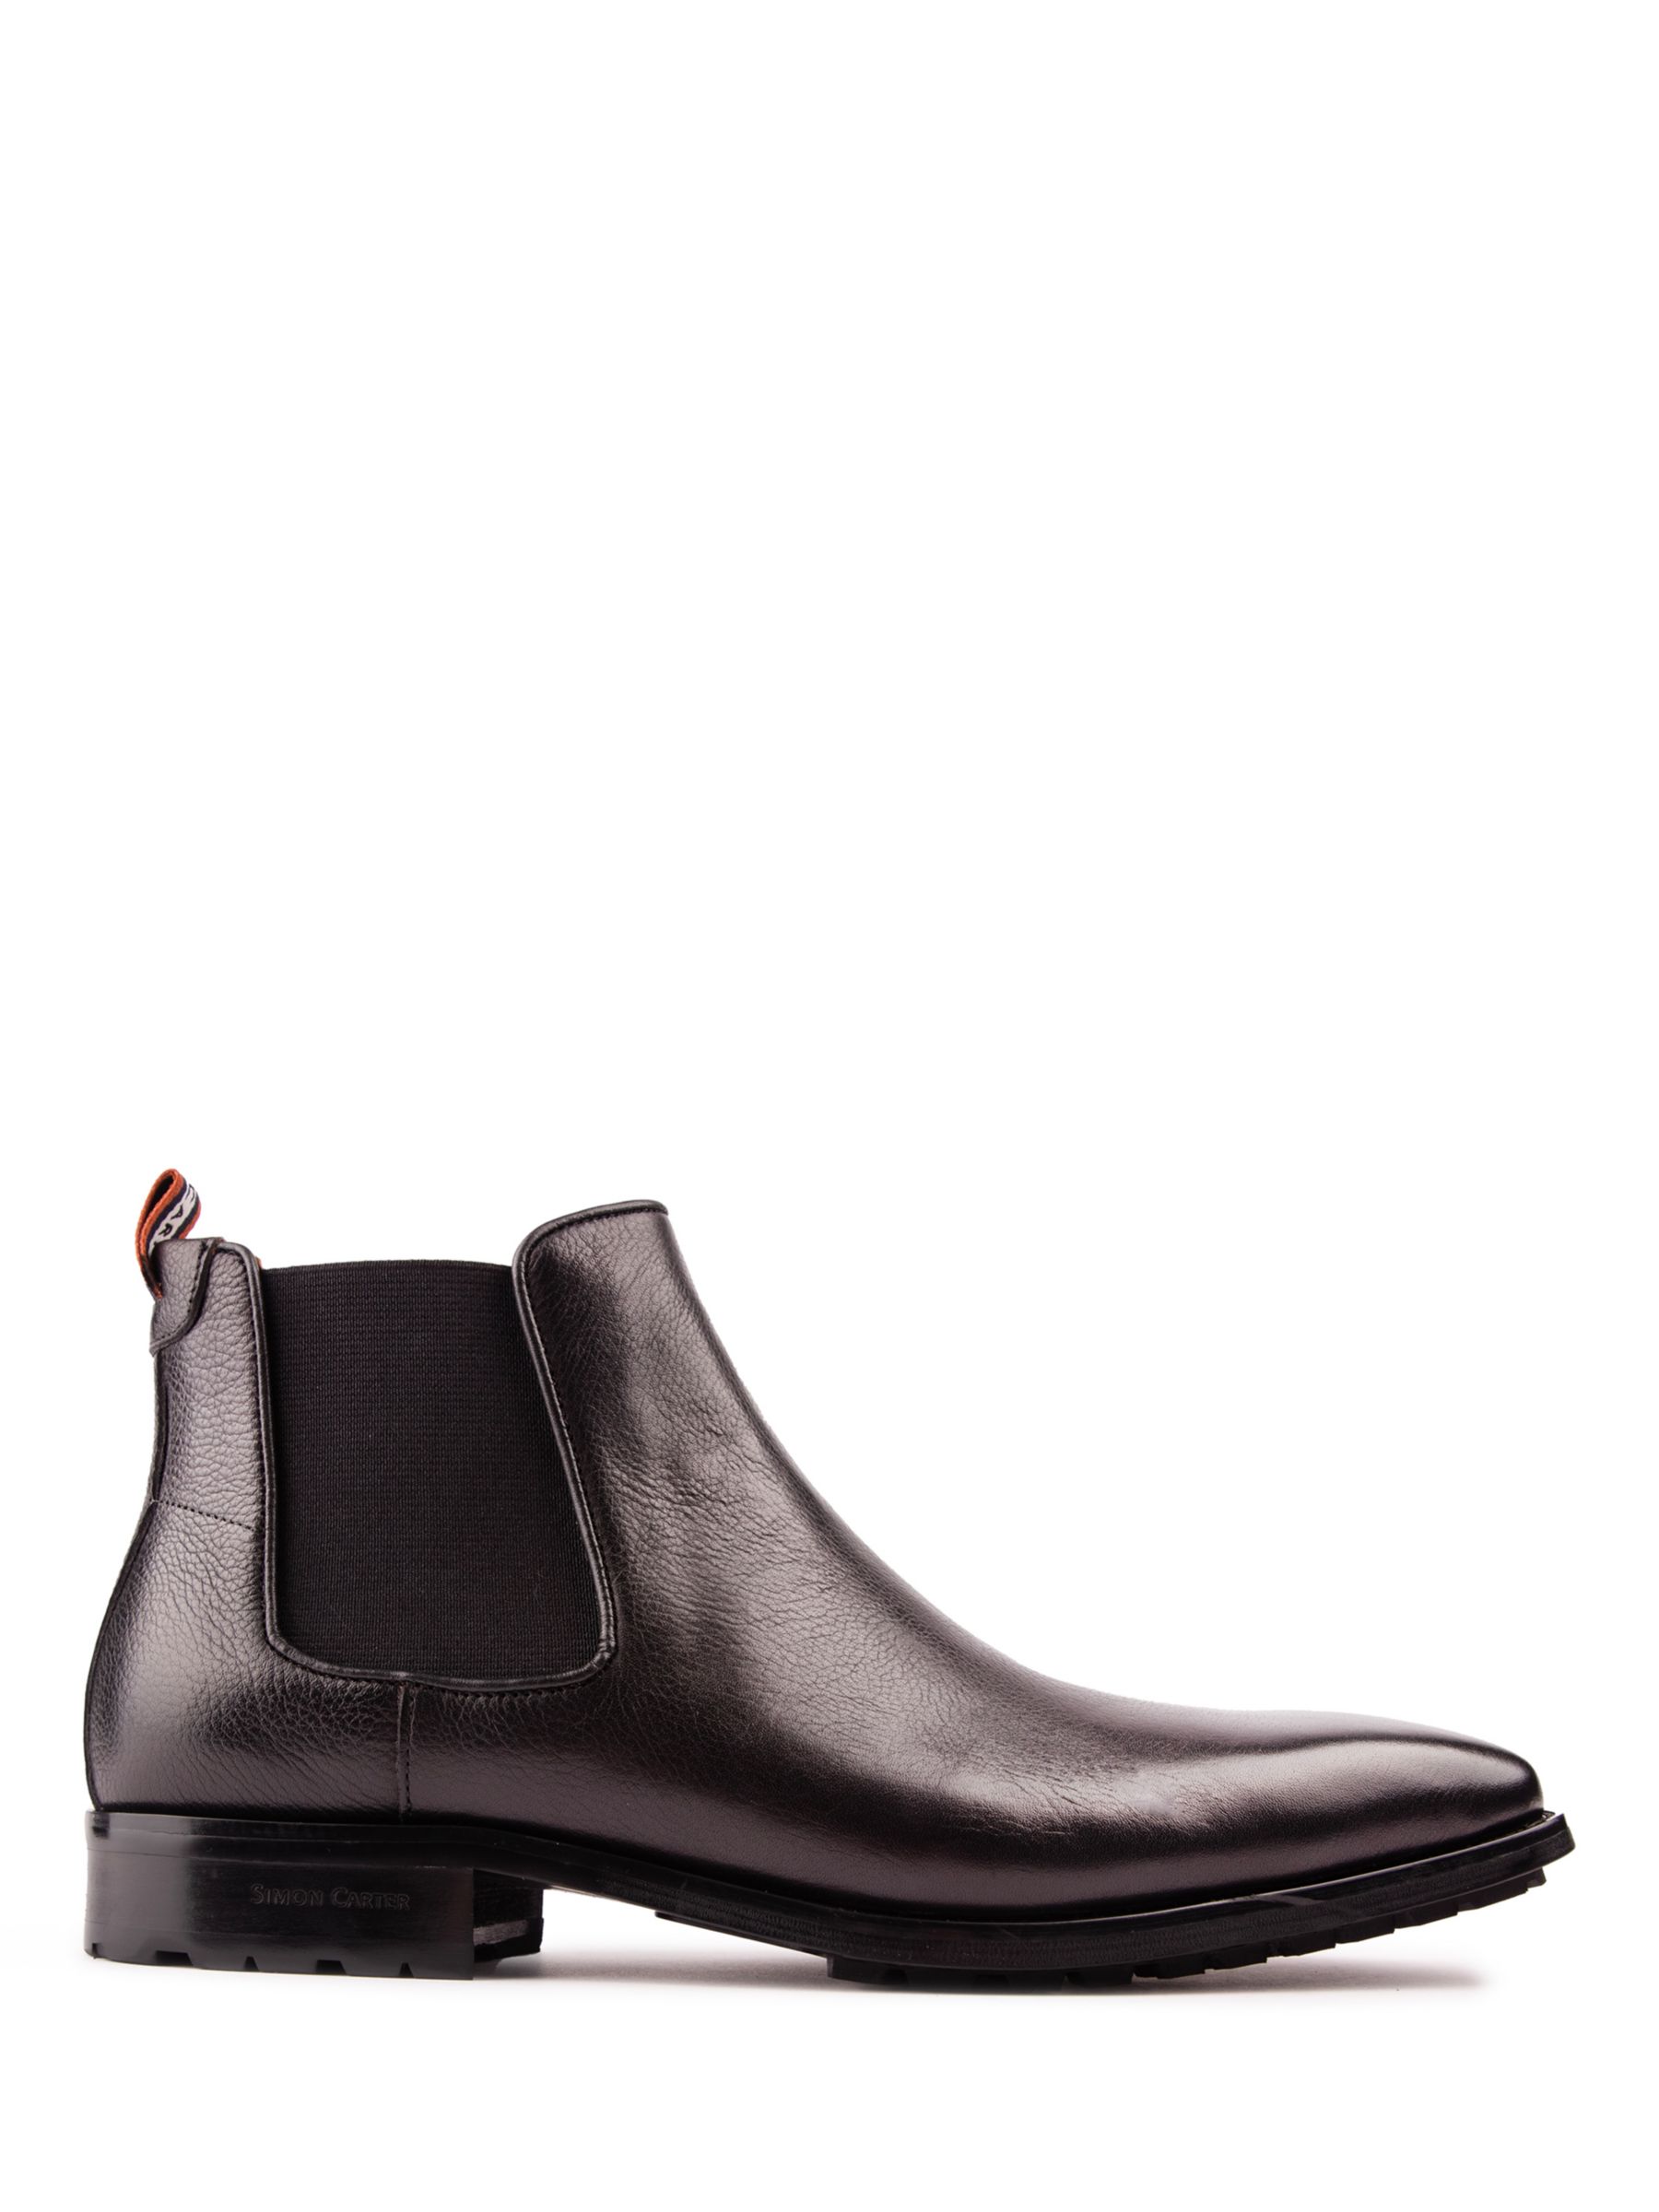 Кожаные ботинки челси Clover Simon Carter, черный кожаные ботинки челси astrex simon carter черный